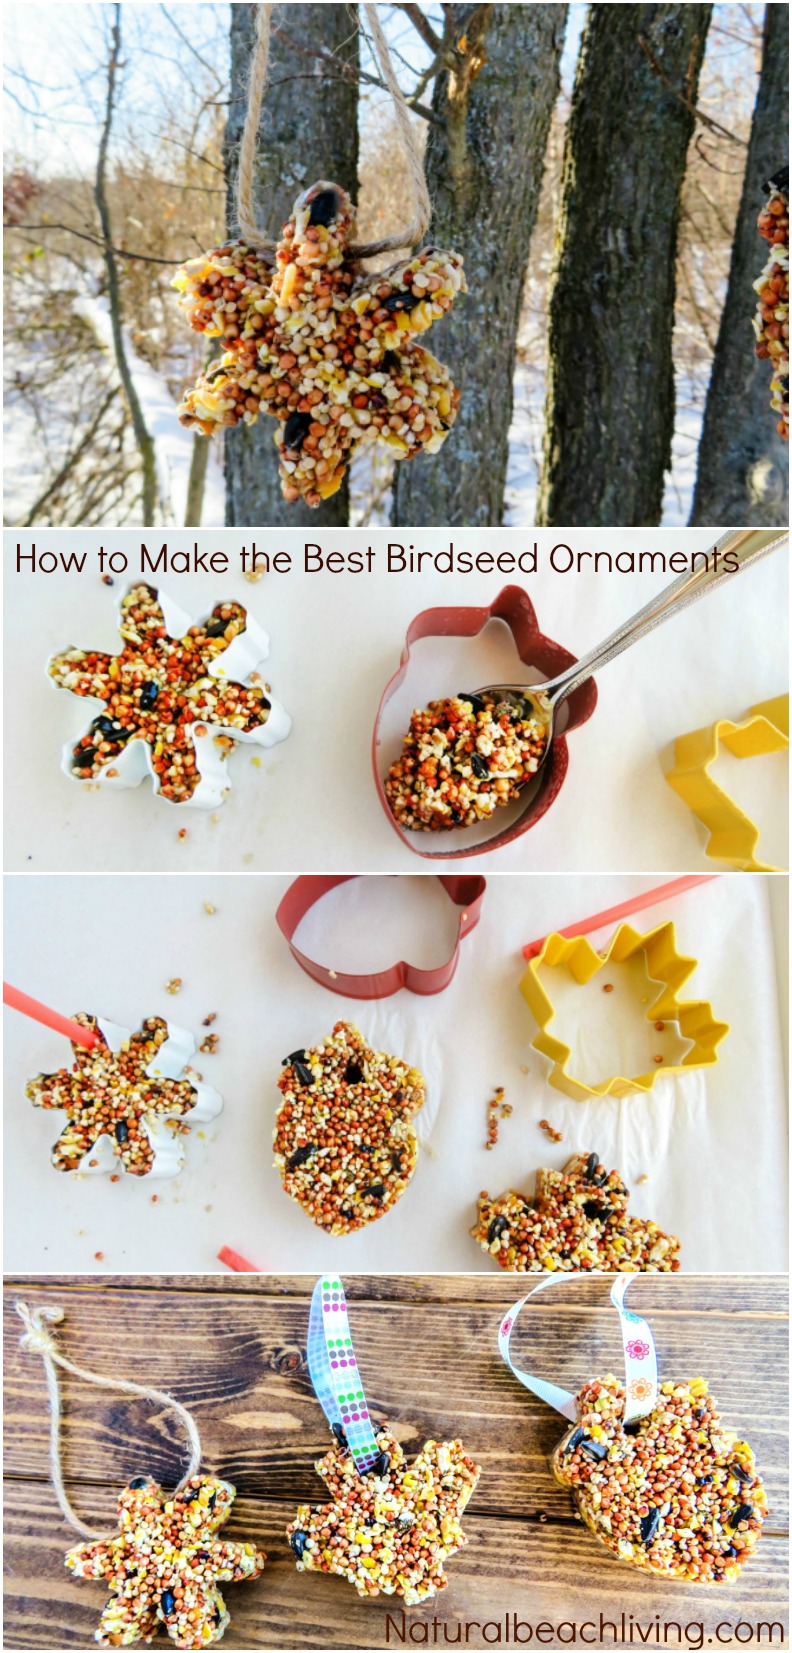 How to Make Apple Birdseed Homemade Bird Feeders, Apple Bird Feeders, Easy Homemade Bird Feeders, Great Fall Craft for Kids, Homemade Bird Treats